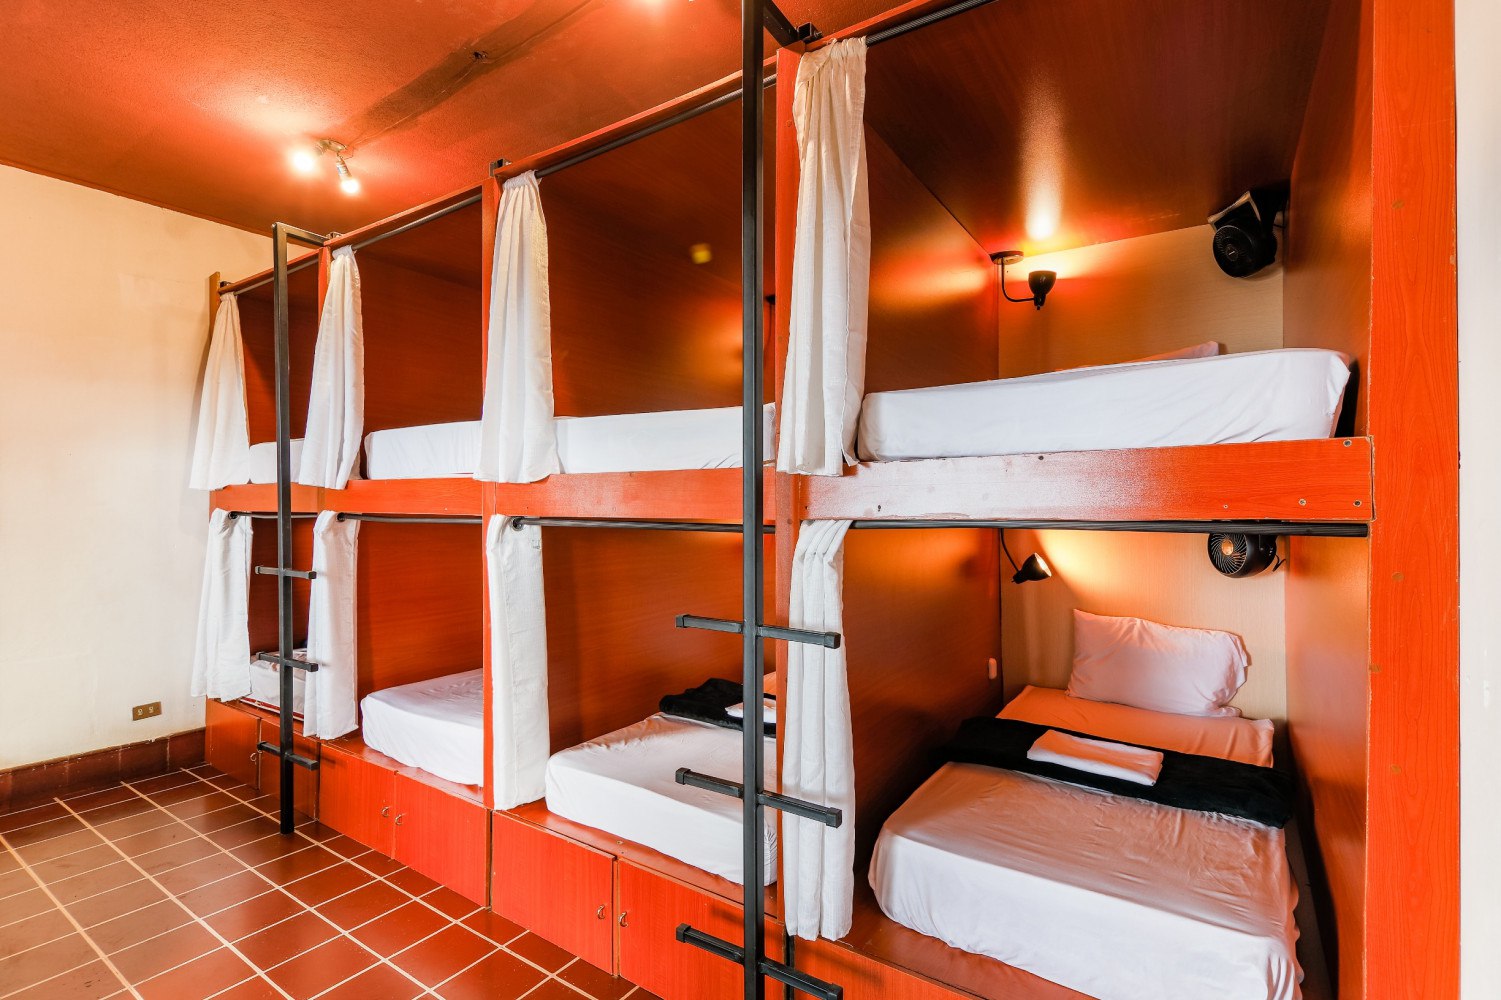 Название общежития. Капсульный хостел МСК. Двухъярусные кровати для хостелов. Капсульные кровати для хостела. Капсулы для хостела.